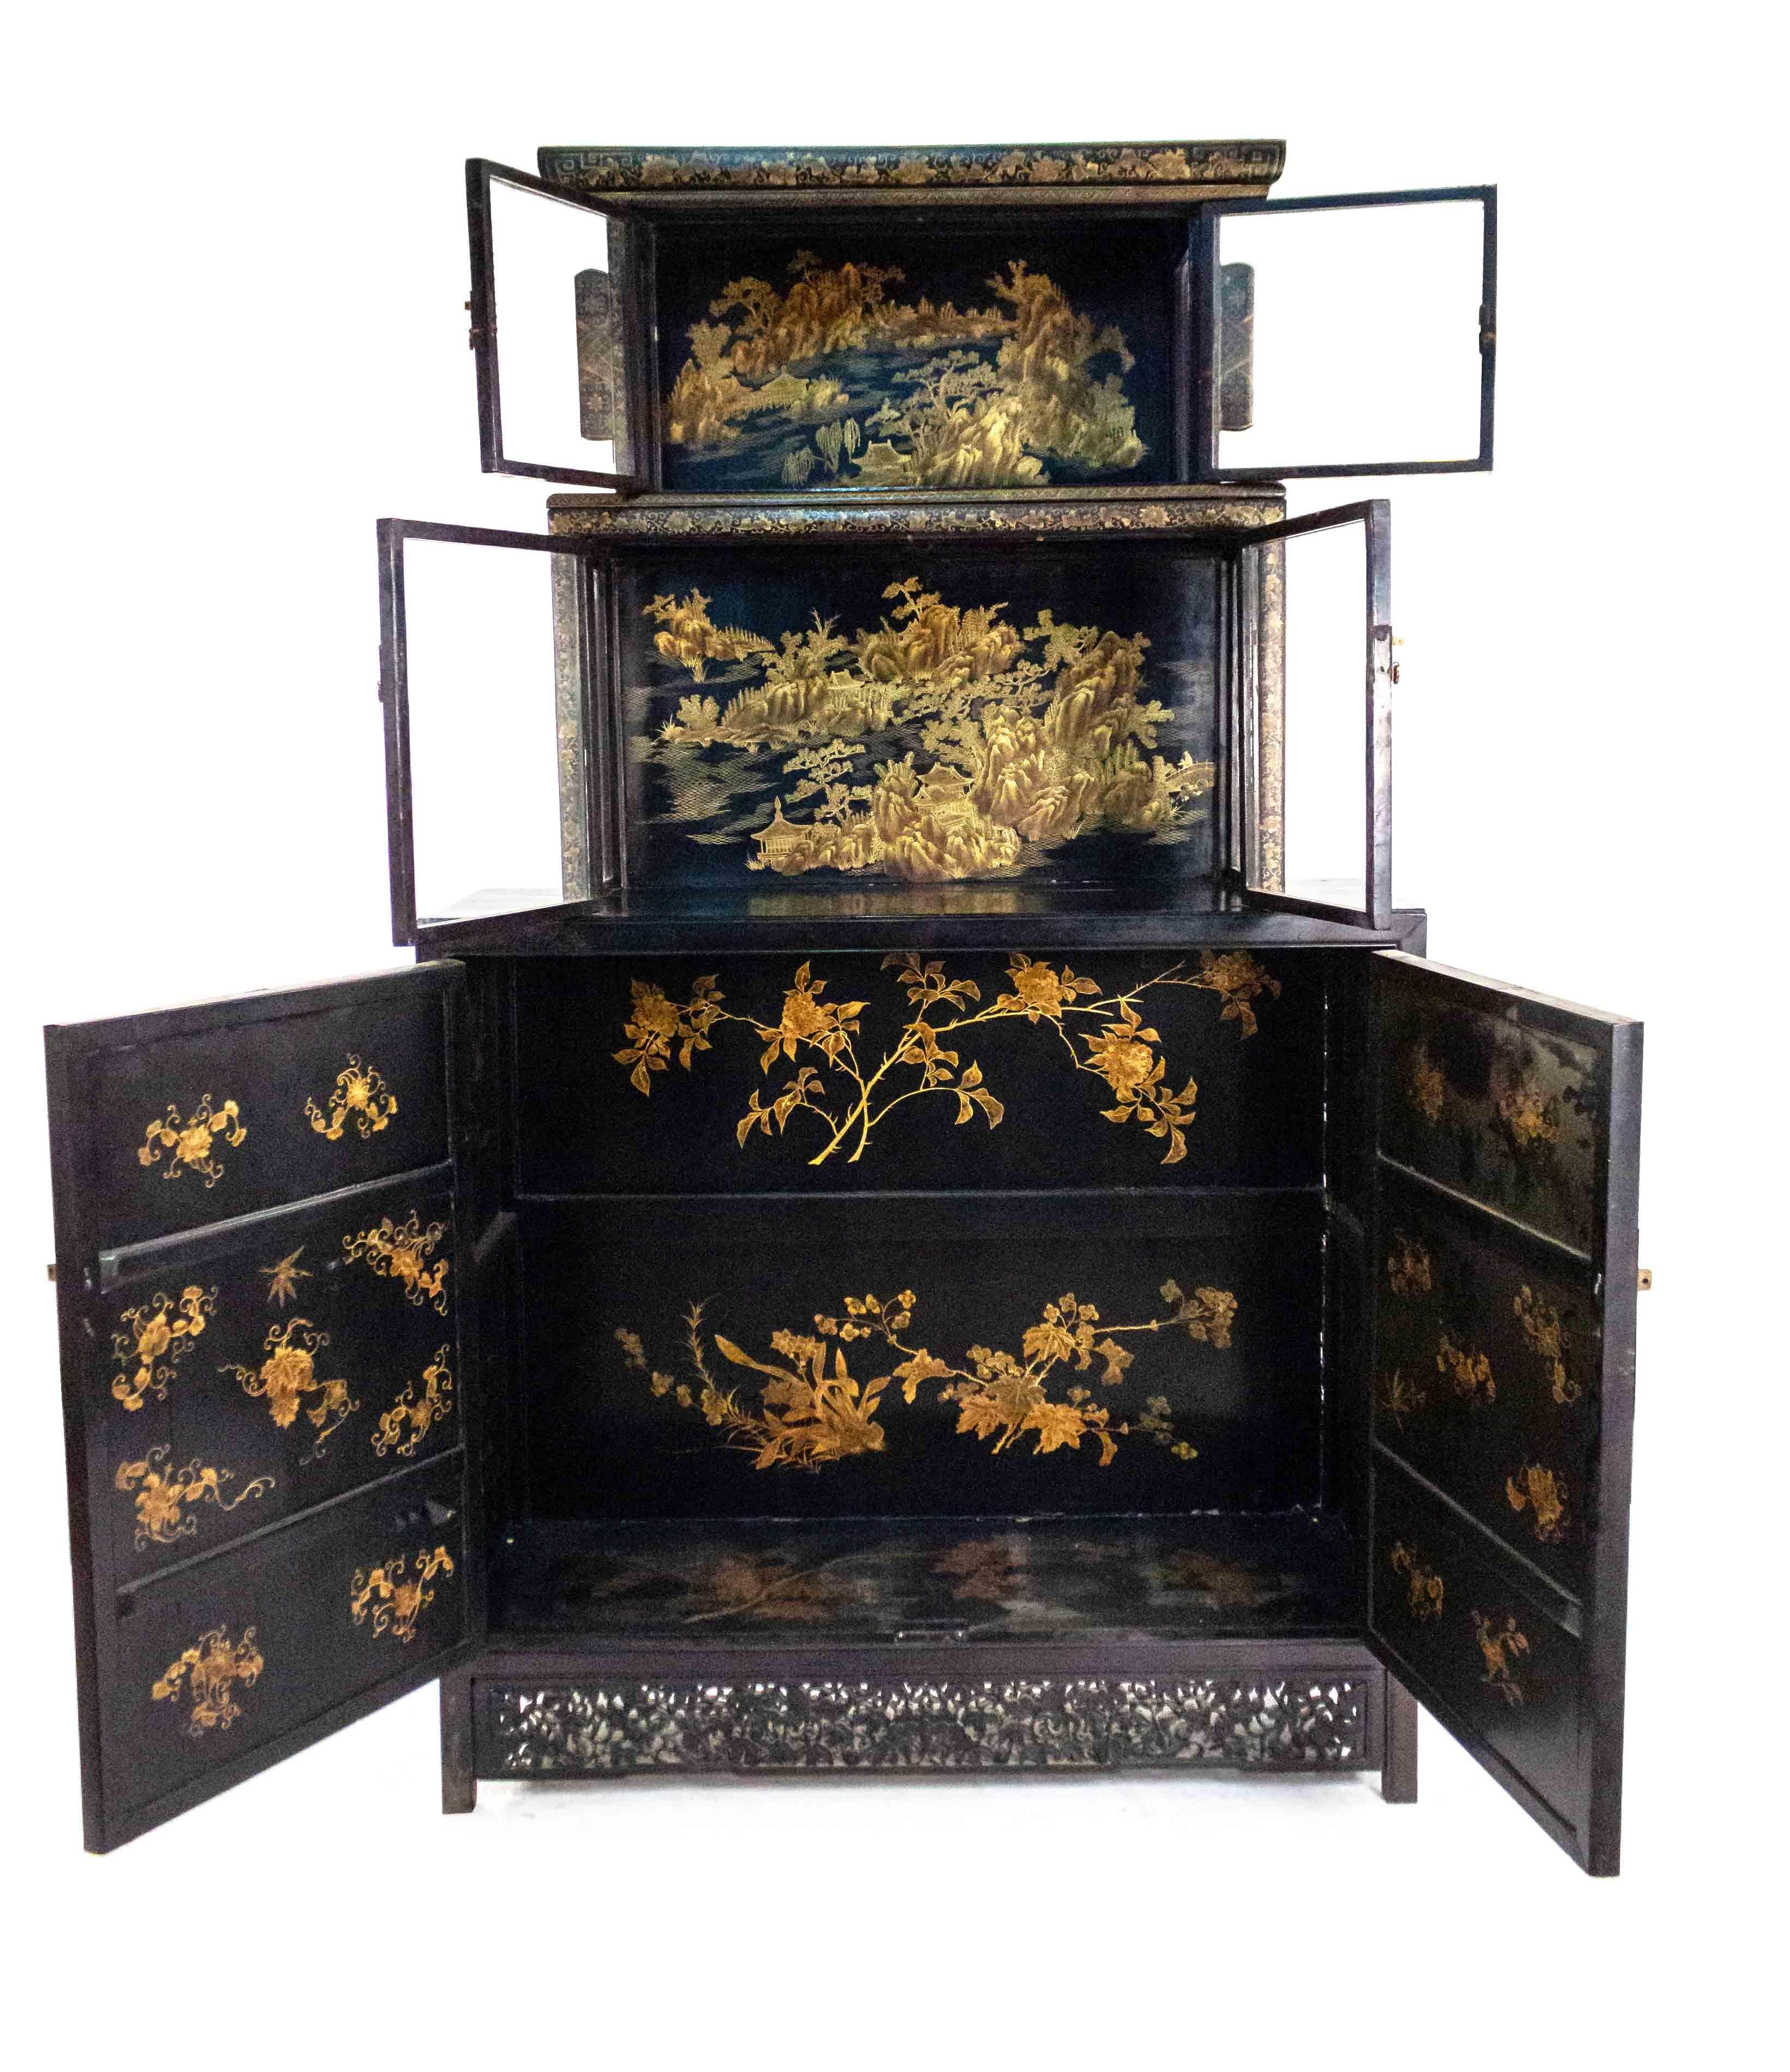 Paire d'armoires chinoises à trois niveaux en verre et en bois laqué noir, décorées de scènes de paysage et de bordures sculptées, avec des ferrures en laiton et un intérieur détaillé (début du 20e siècle).